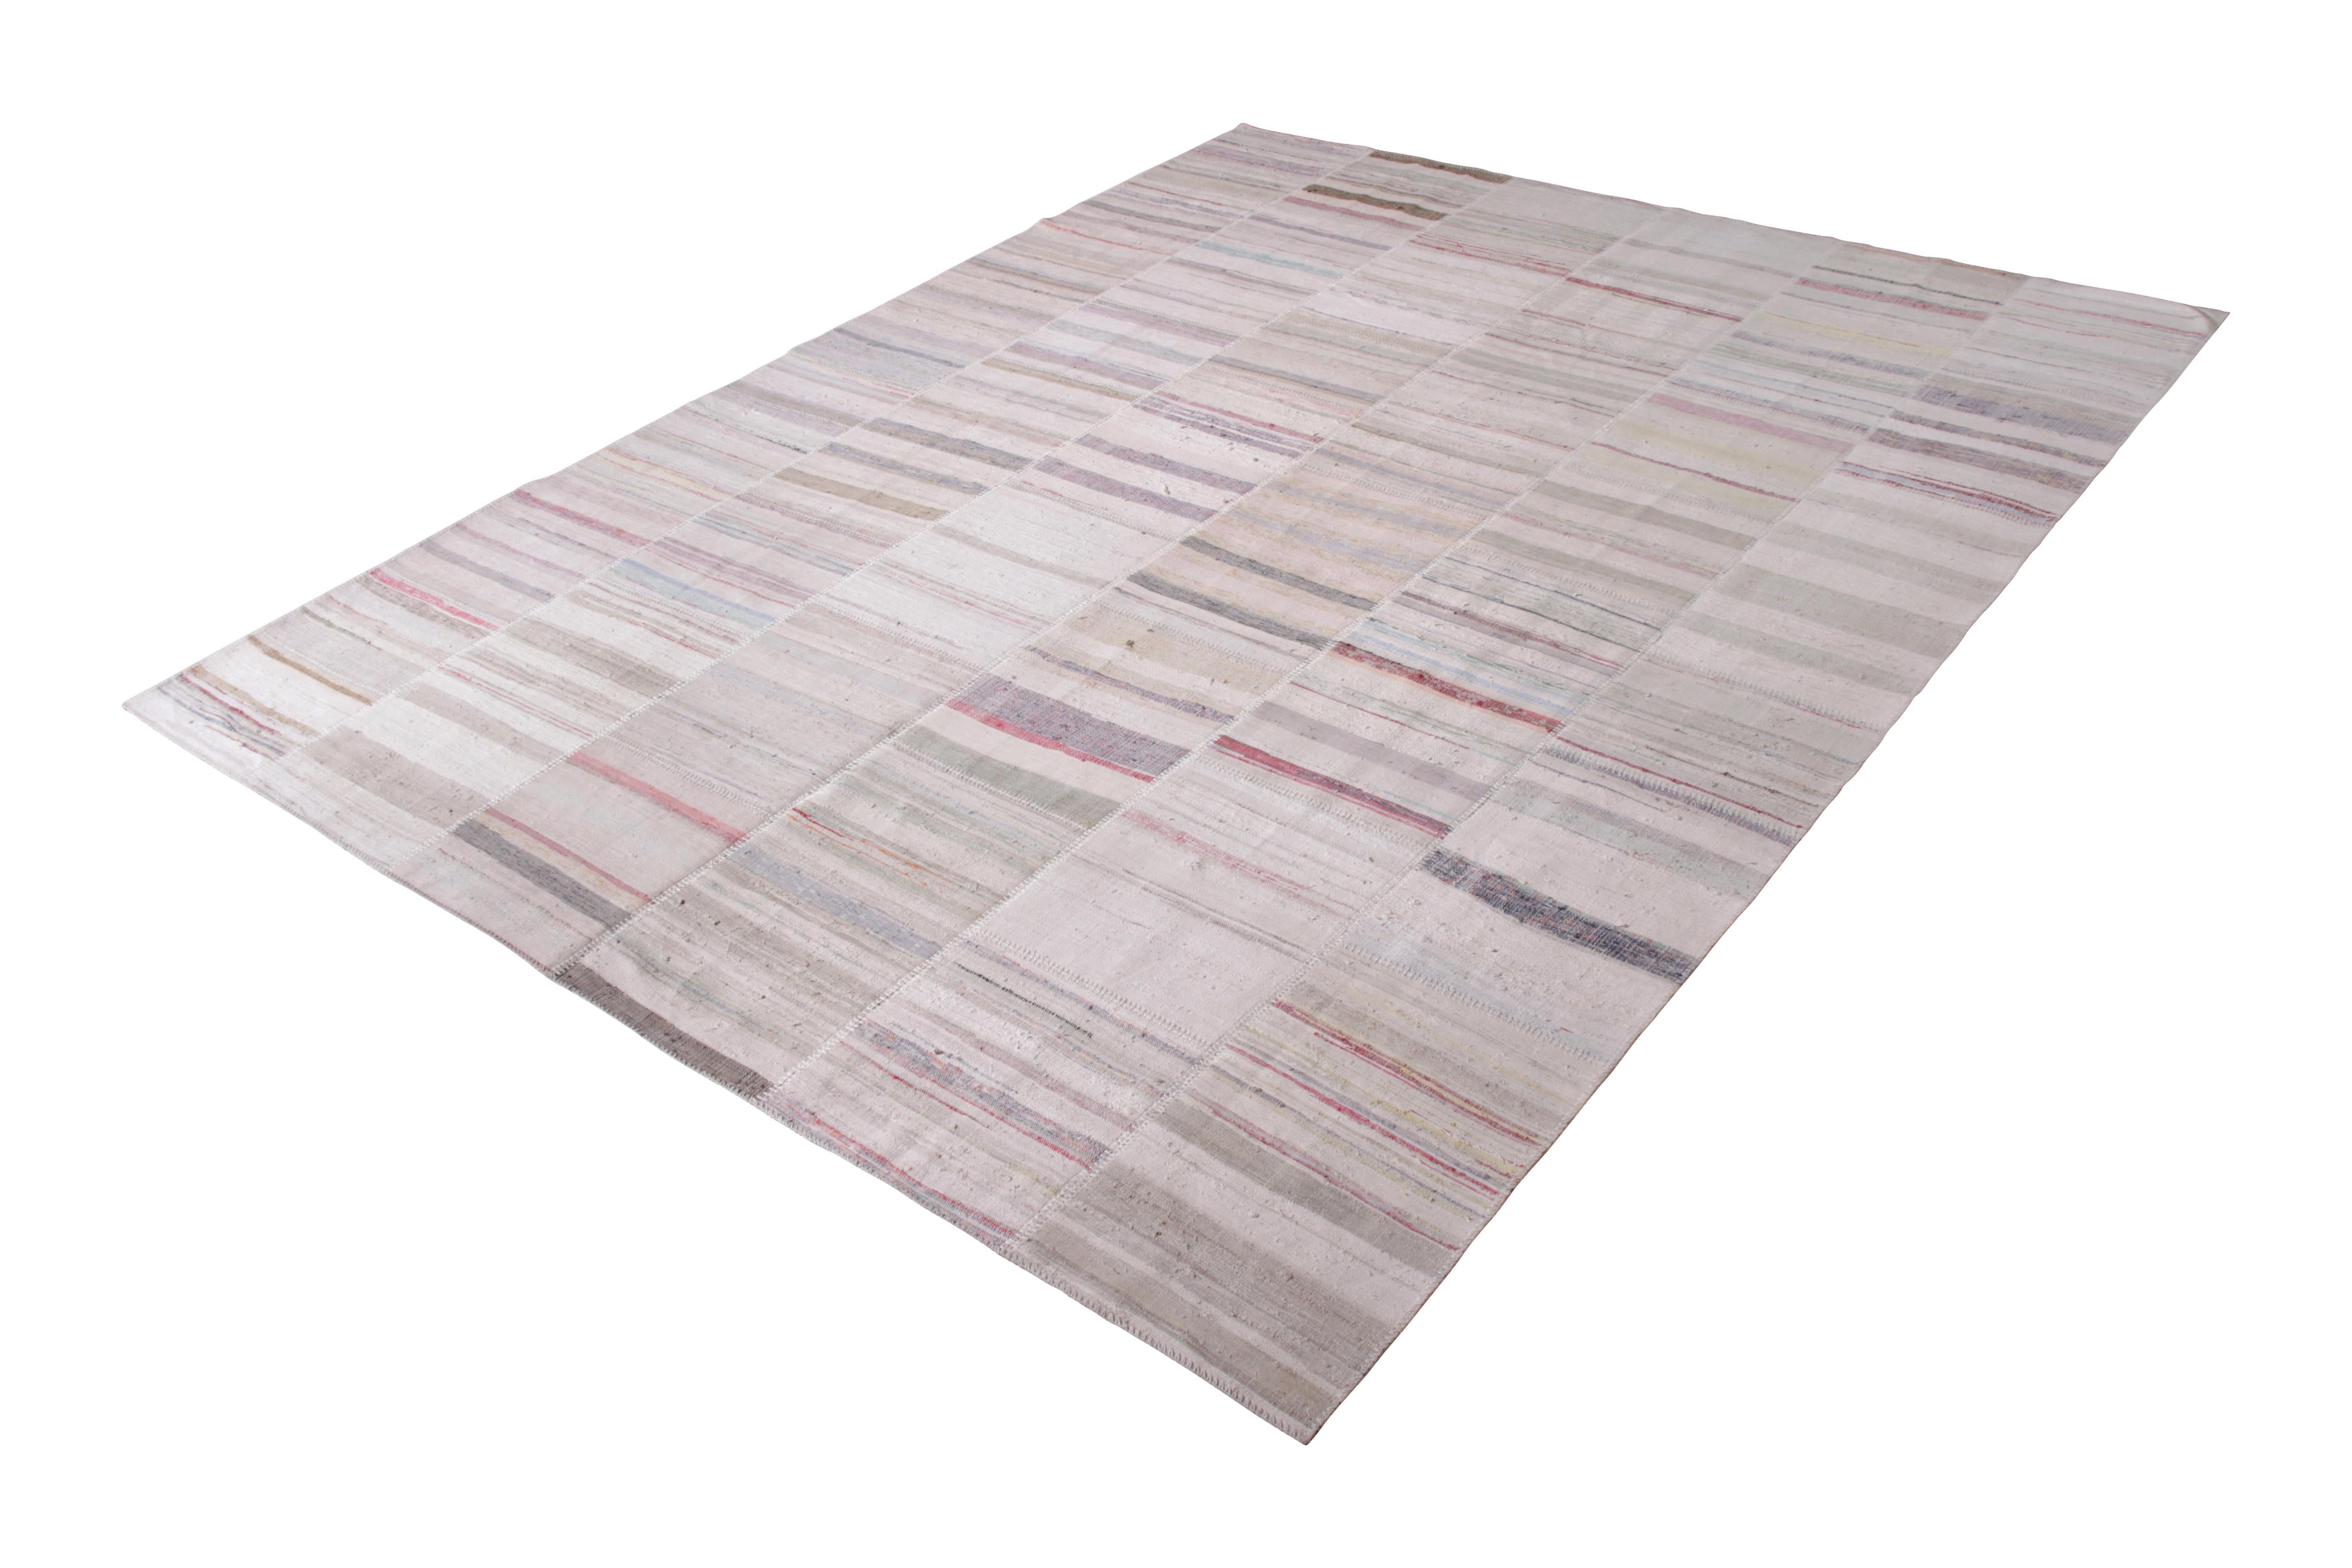 Dieser moderne Kilim-Teppich aus der Patchwork-Kilim-Kollektion von Rug & Kilim ist ein handgewebter Wollflachgewebe-Teppich mit Vintage-Garnen. Er ist inspiriert von Kilim-Teppichen aus der Mitte des letzten Jahrhunderts und zeigt ein skurriles